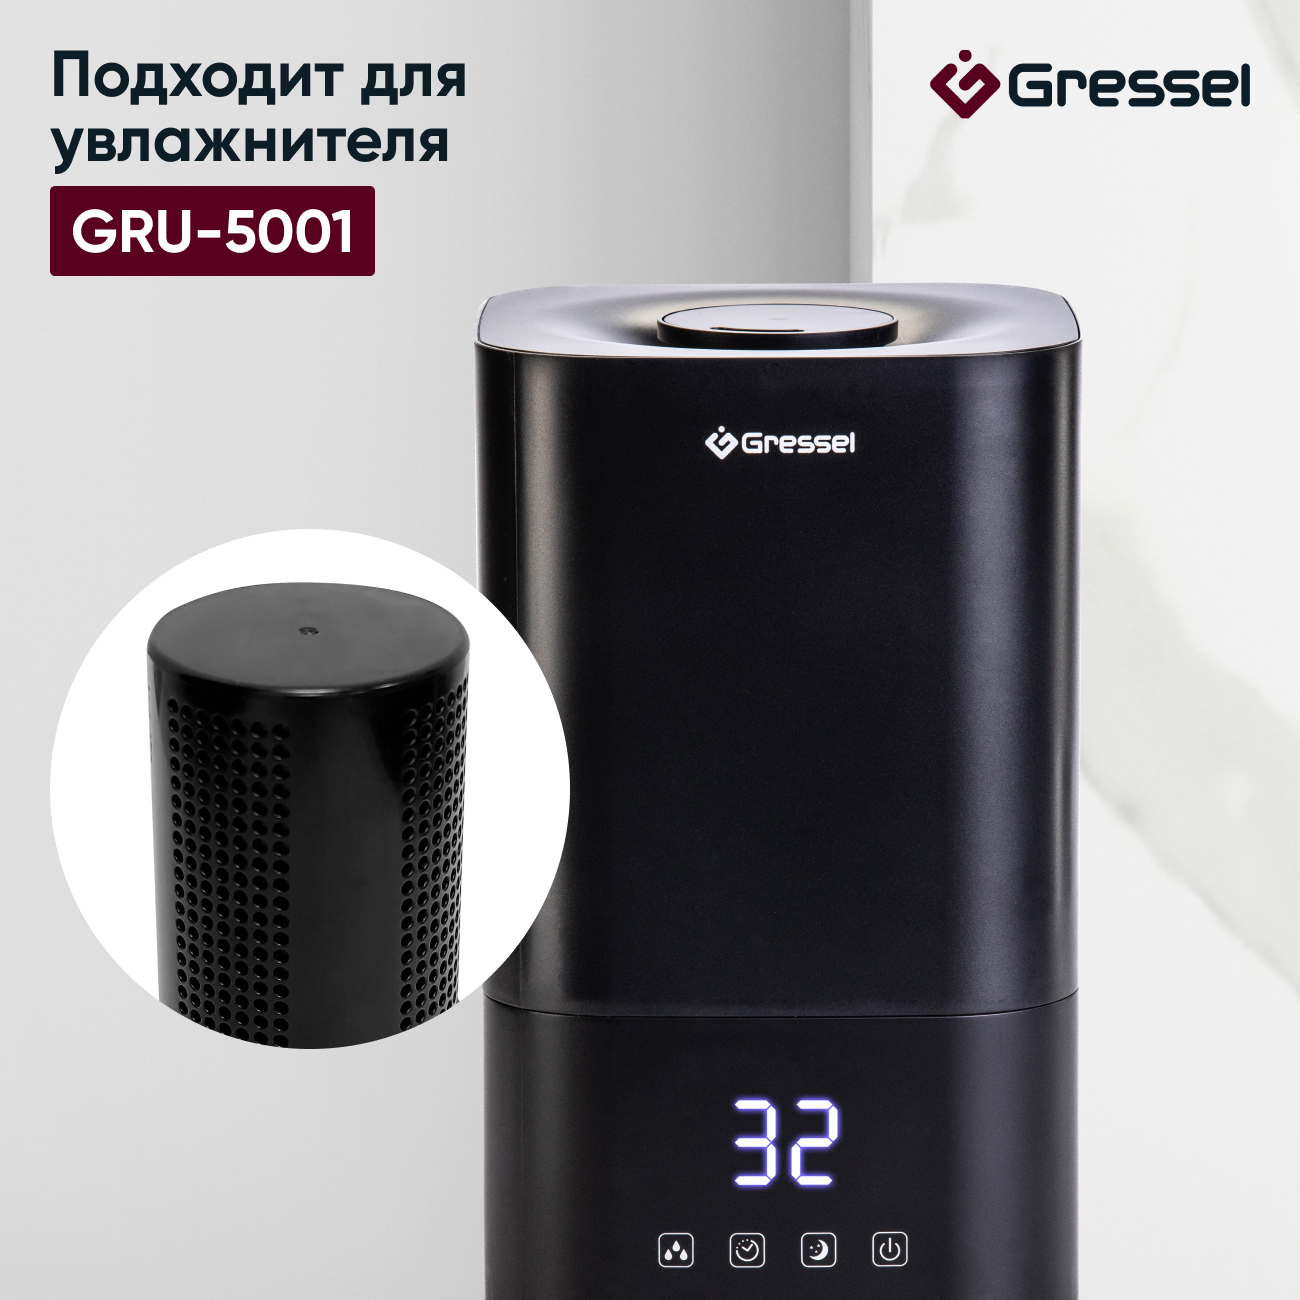 Фильтр увлажнителя воздуха Gressel G-5001 для модели GRU-5001 фильтр увлажнителя воздуха gressel g 5002 для модели gru 5002